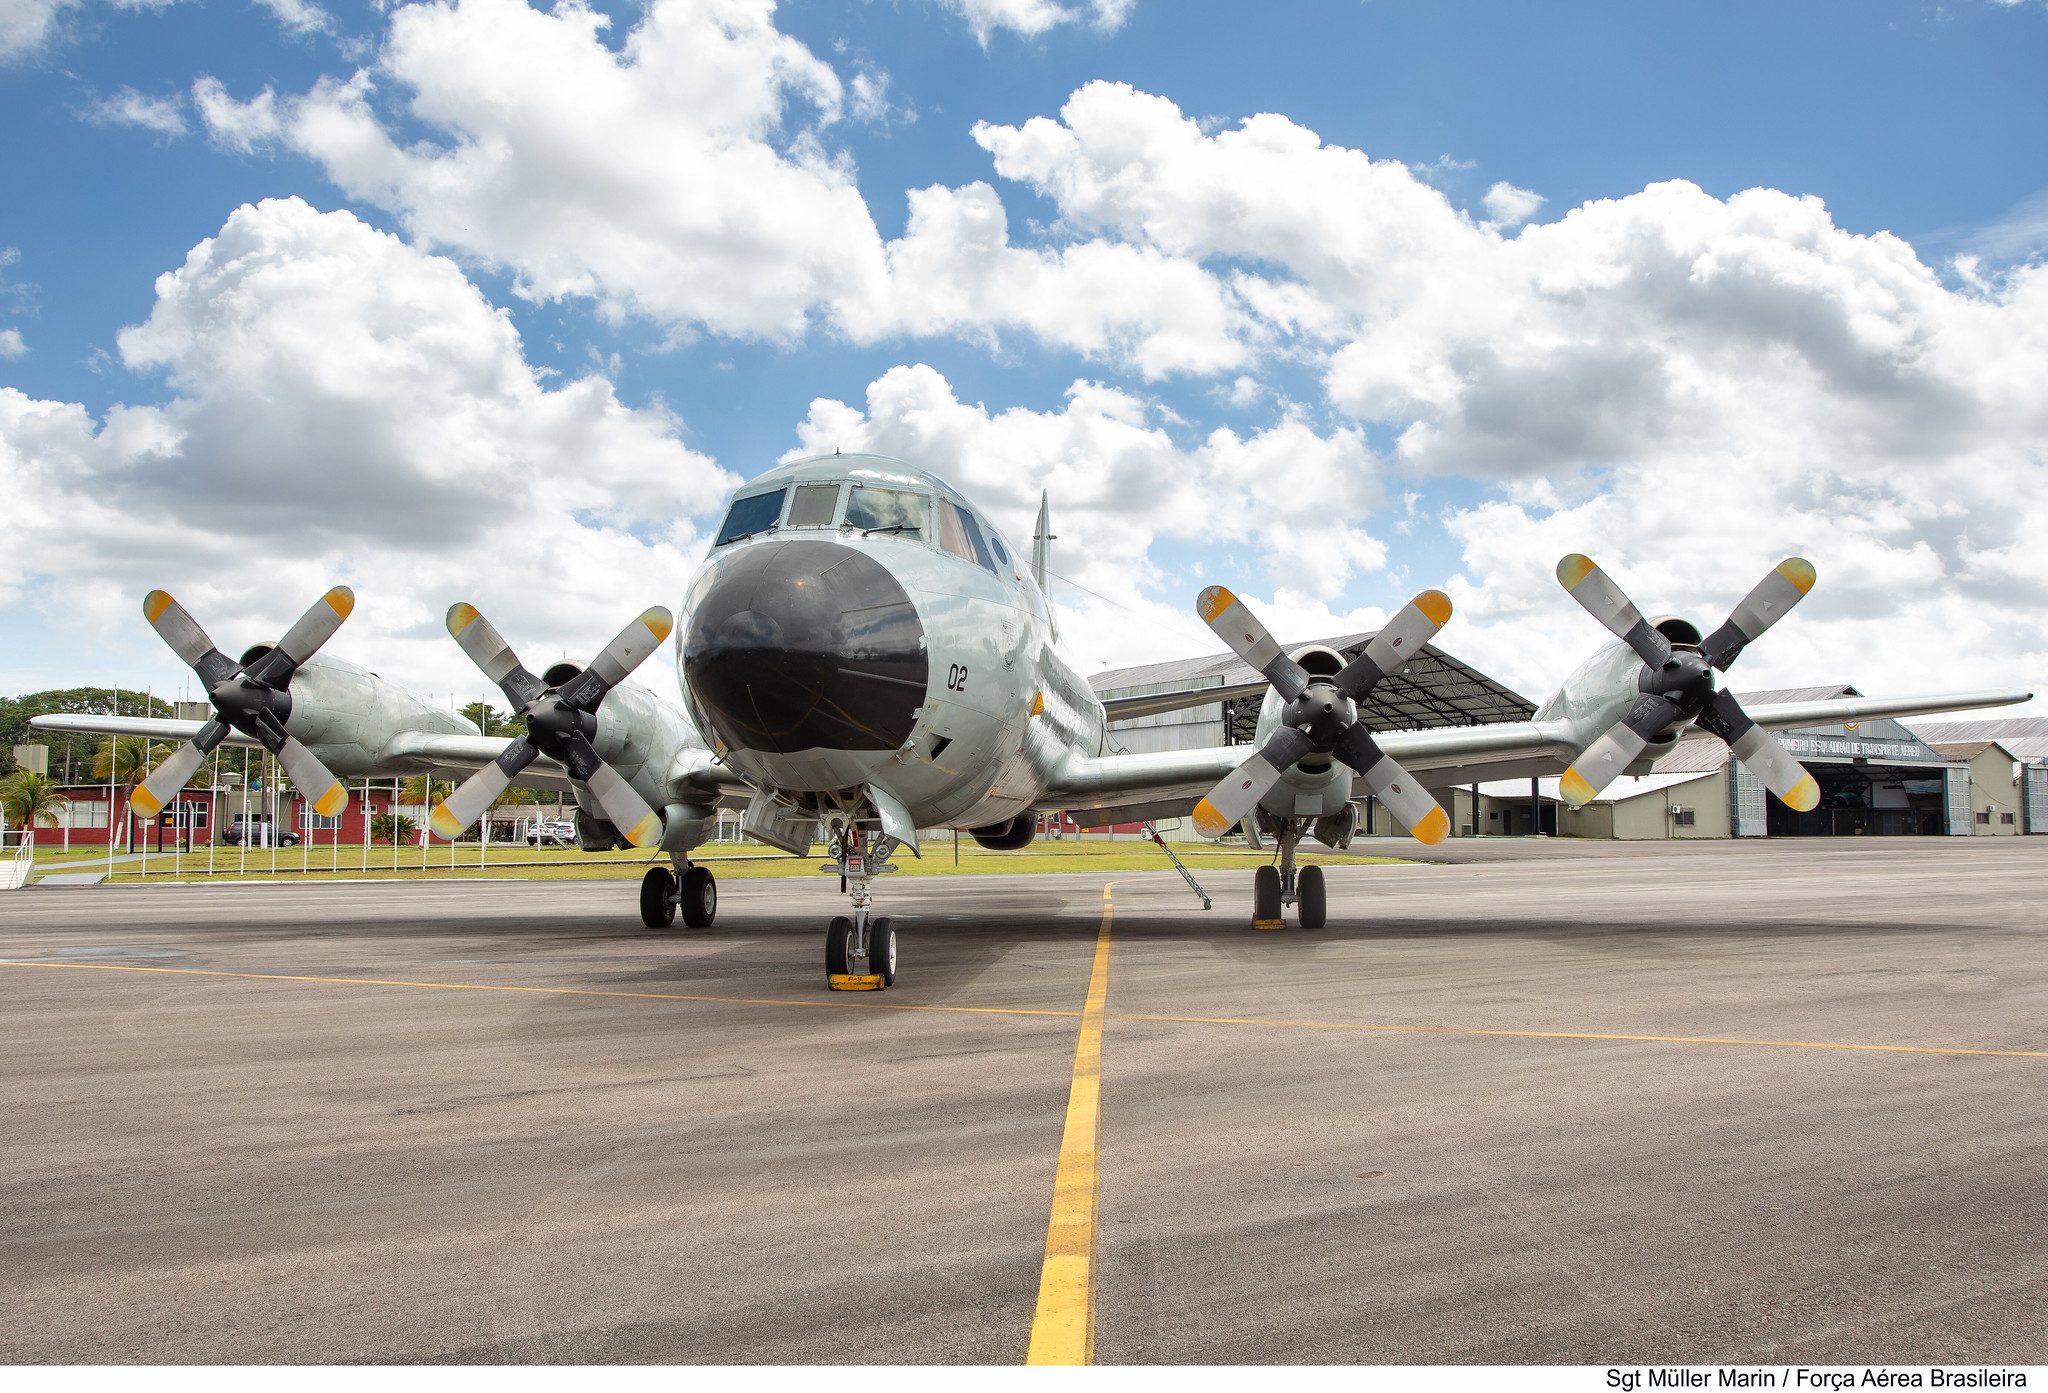 Aeronave da Força Aérea Brasileira (FAB) chega à Itália